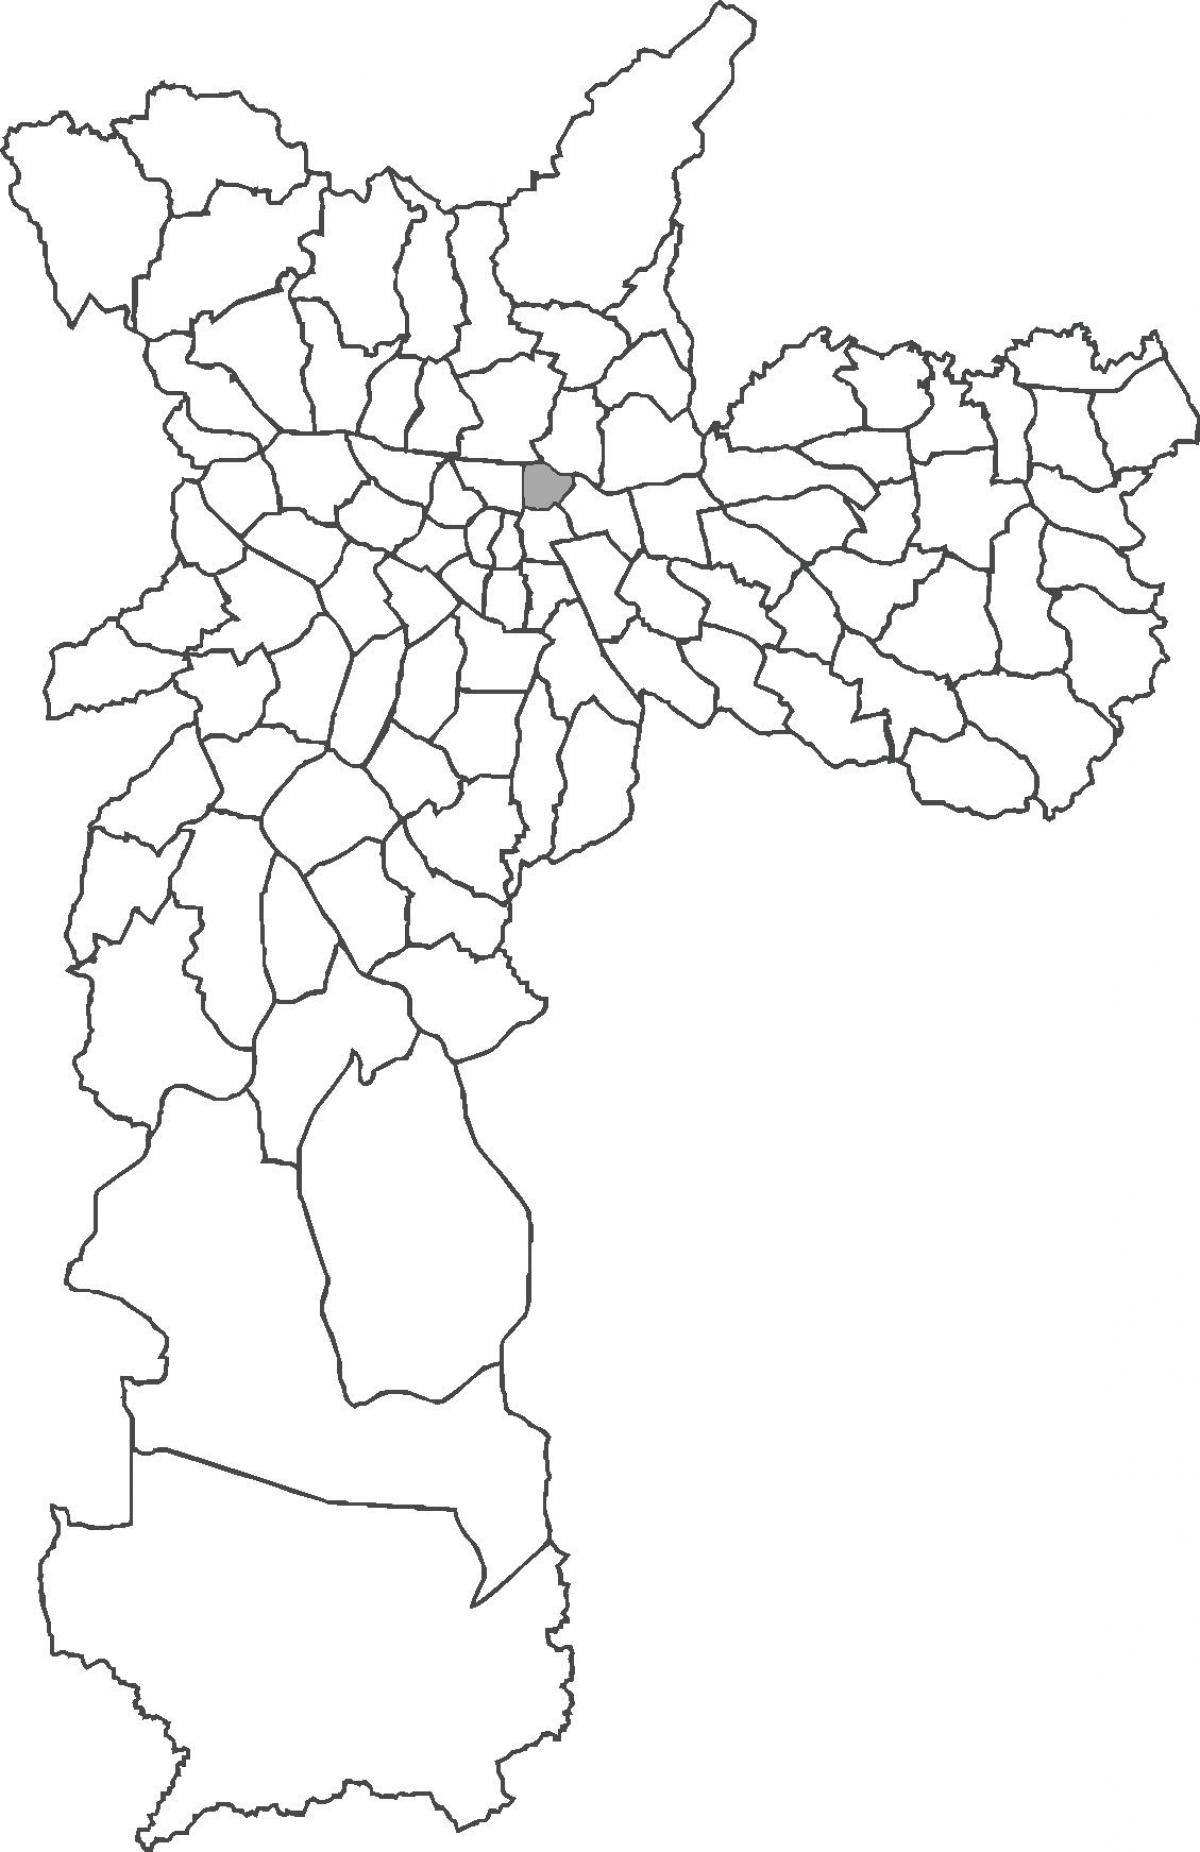 মানচিত্র Pari জেলা